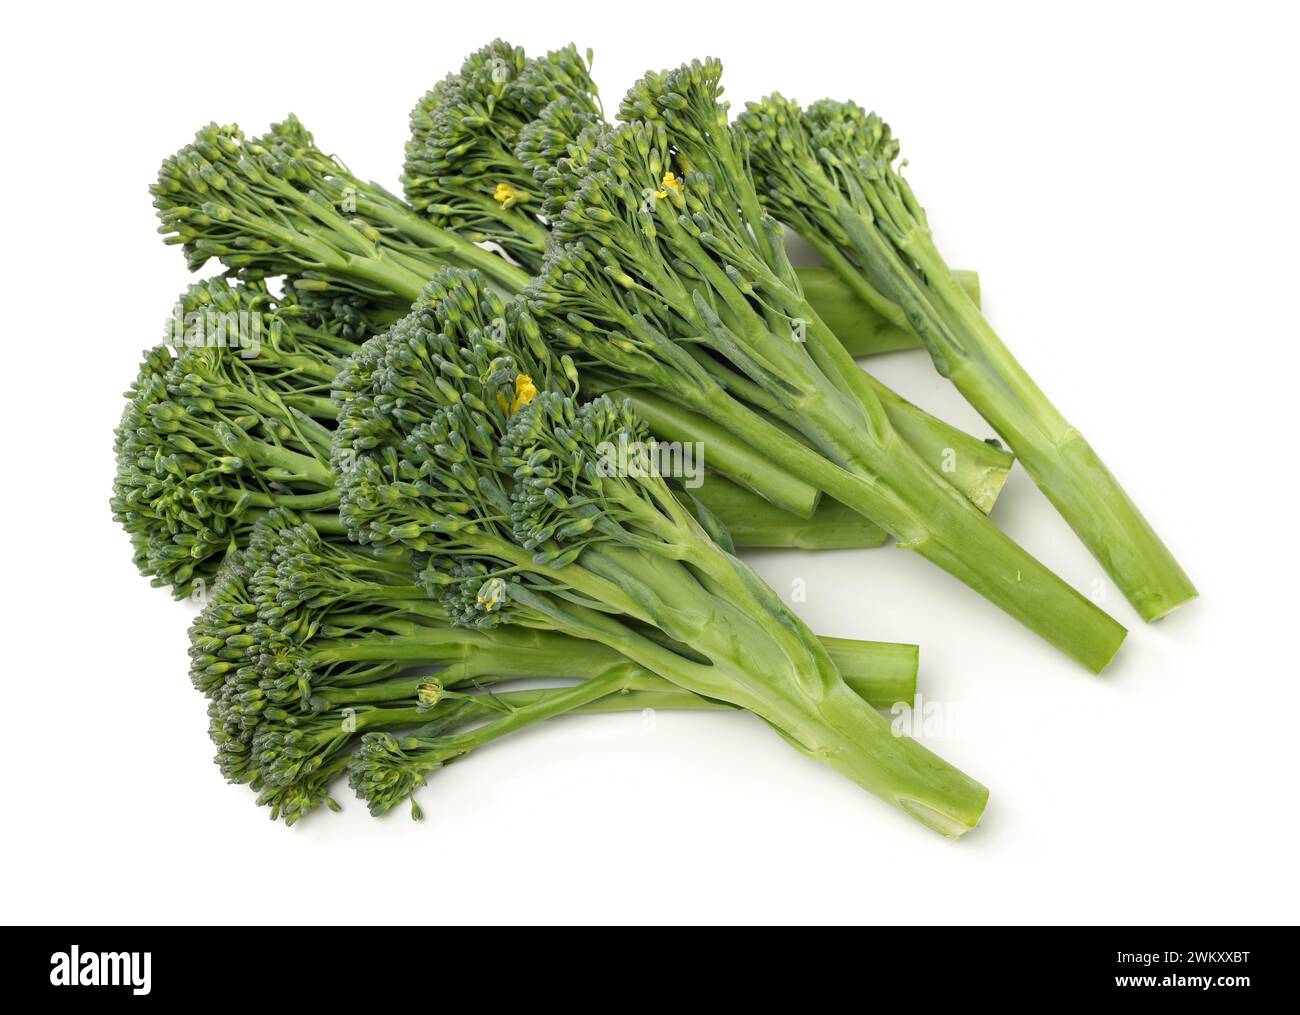 Broccolini baby broccoli su sfondo bianco Foto Stock